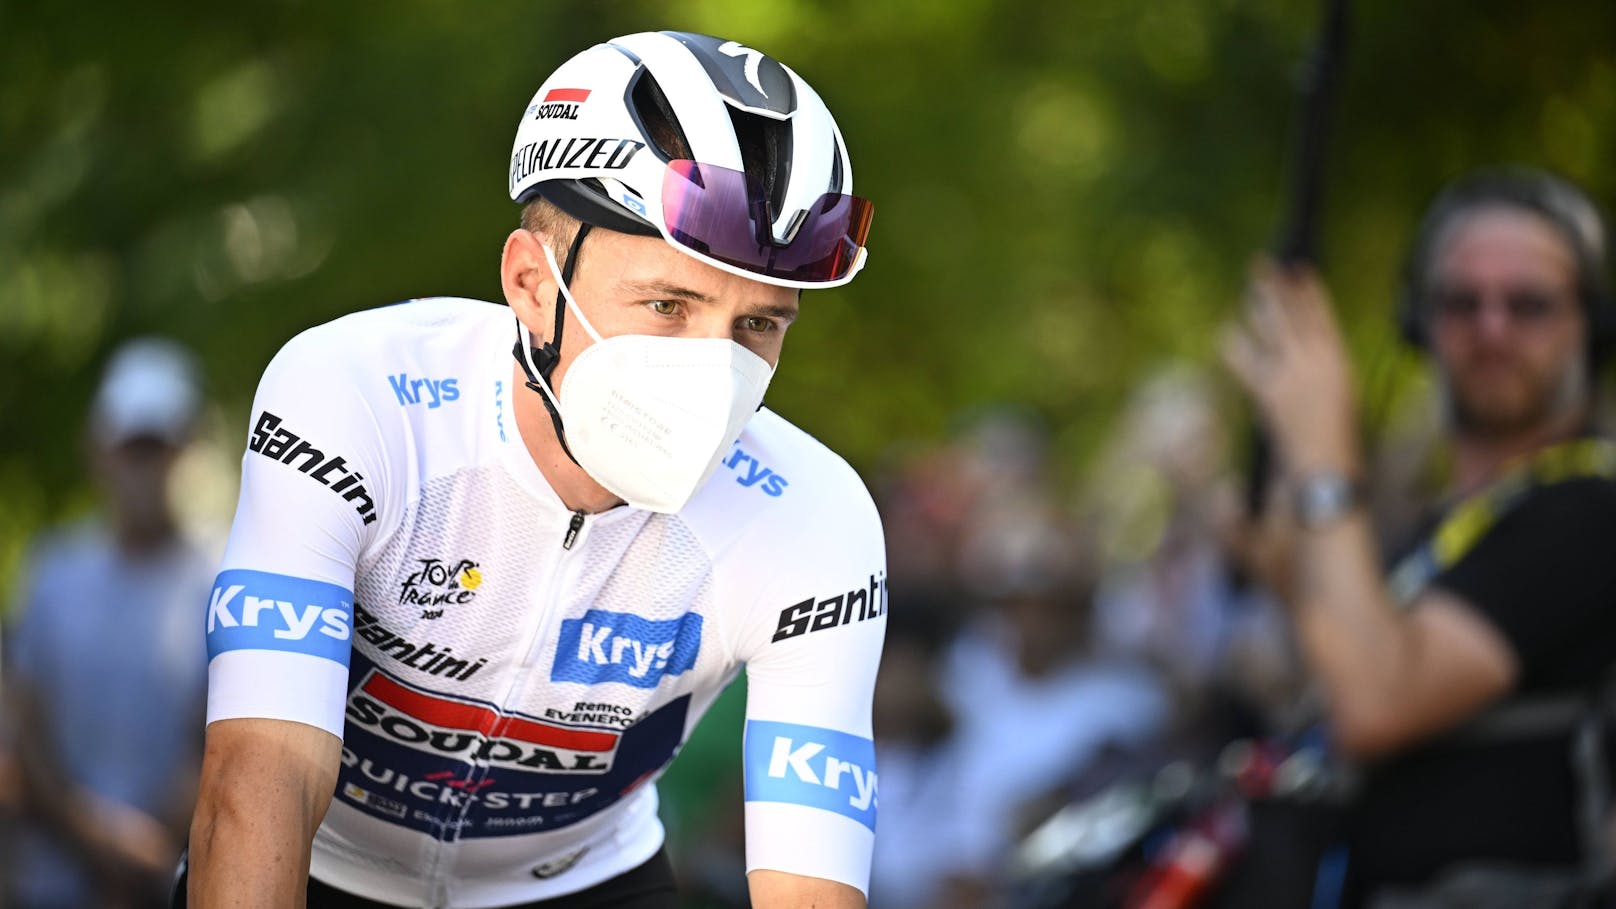 Corona-Sorgen! Tour de France führt Maskenpflicht ein